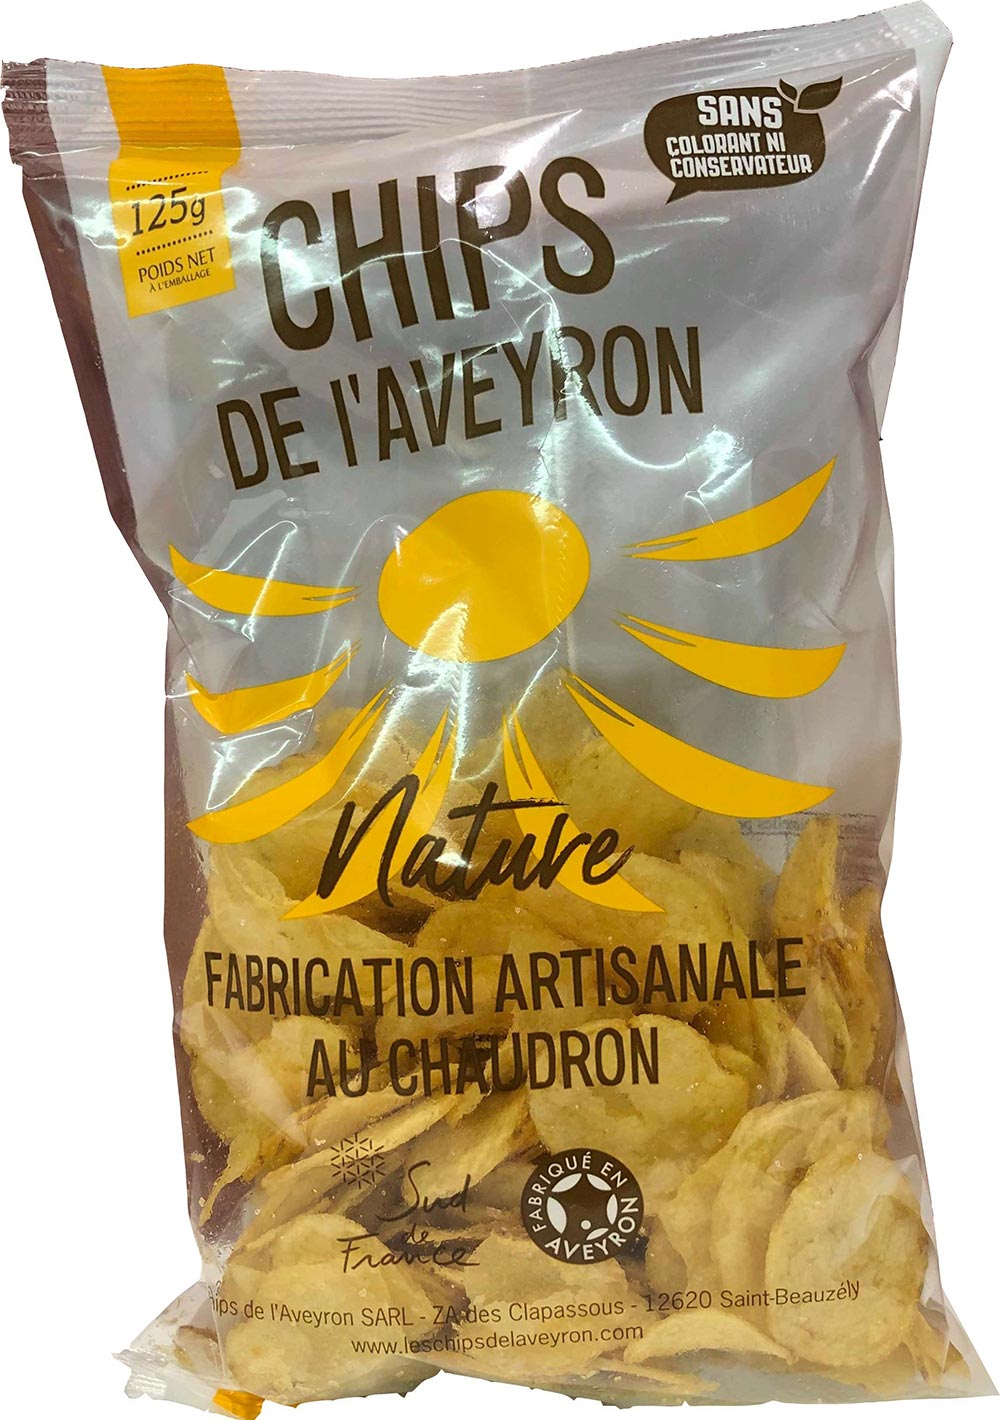 Chips de l'Aveyron